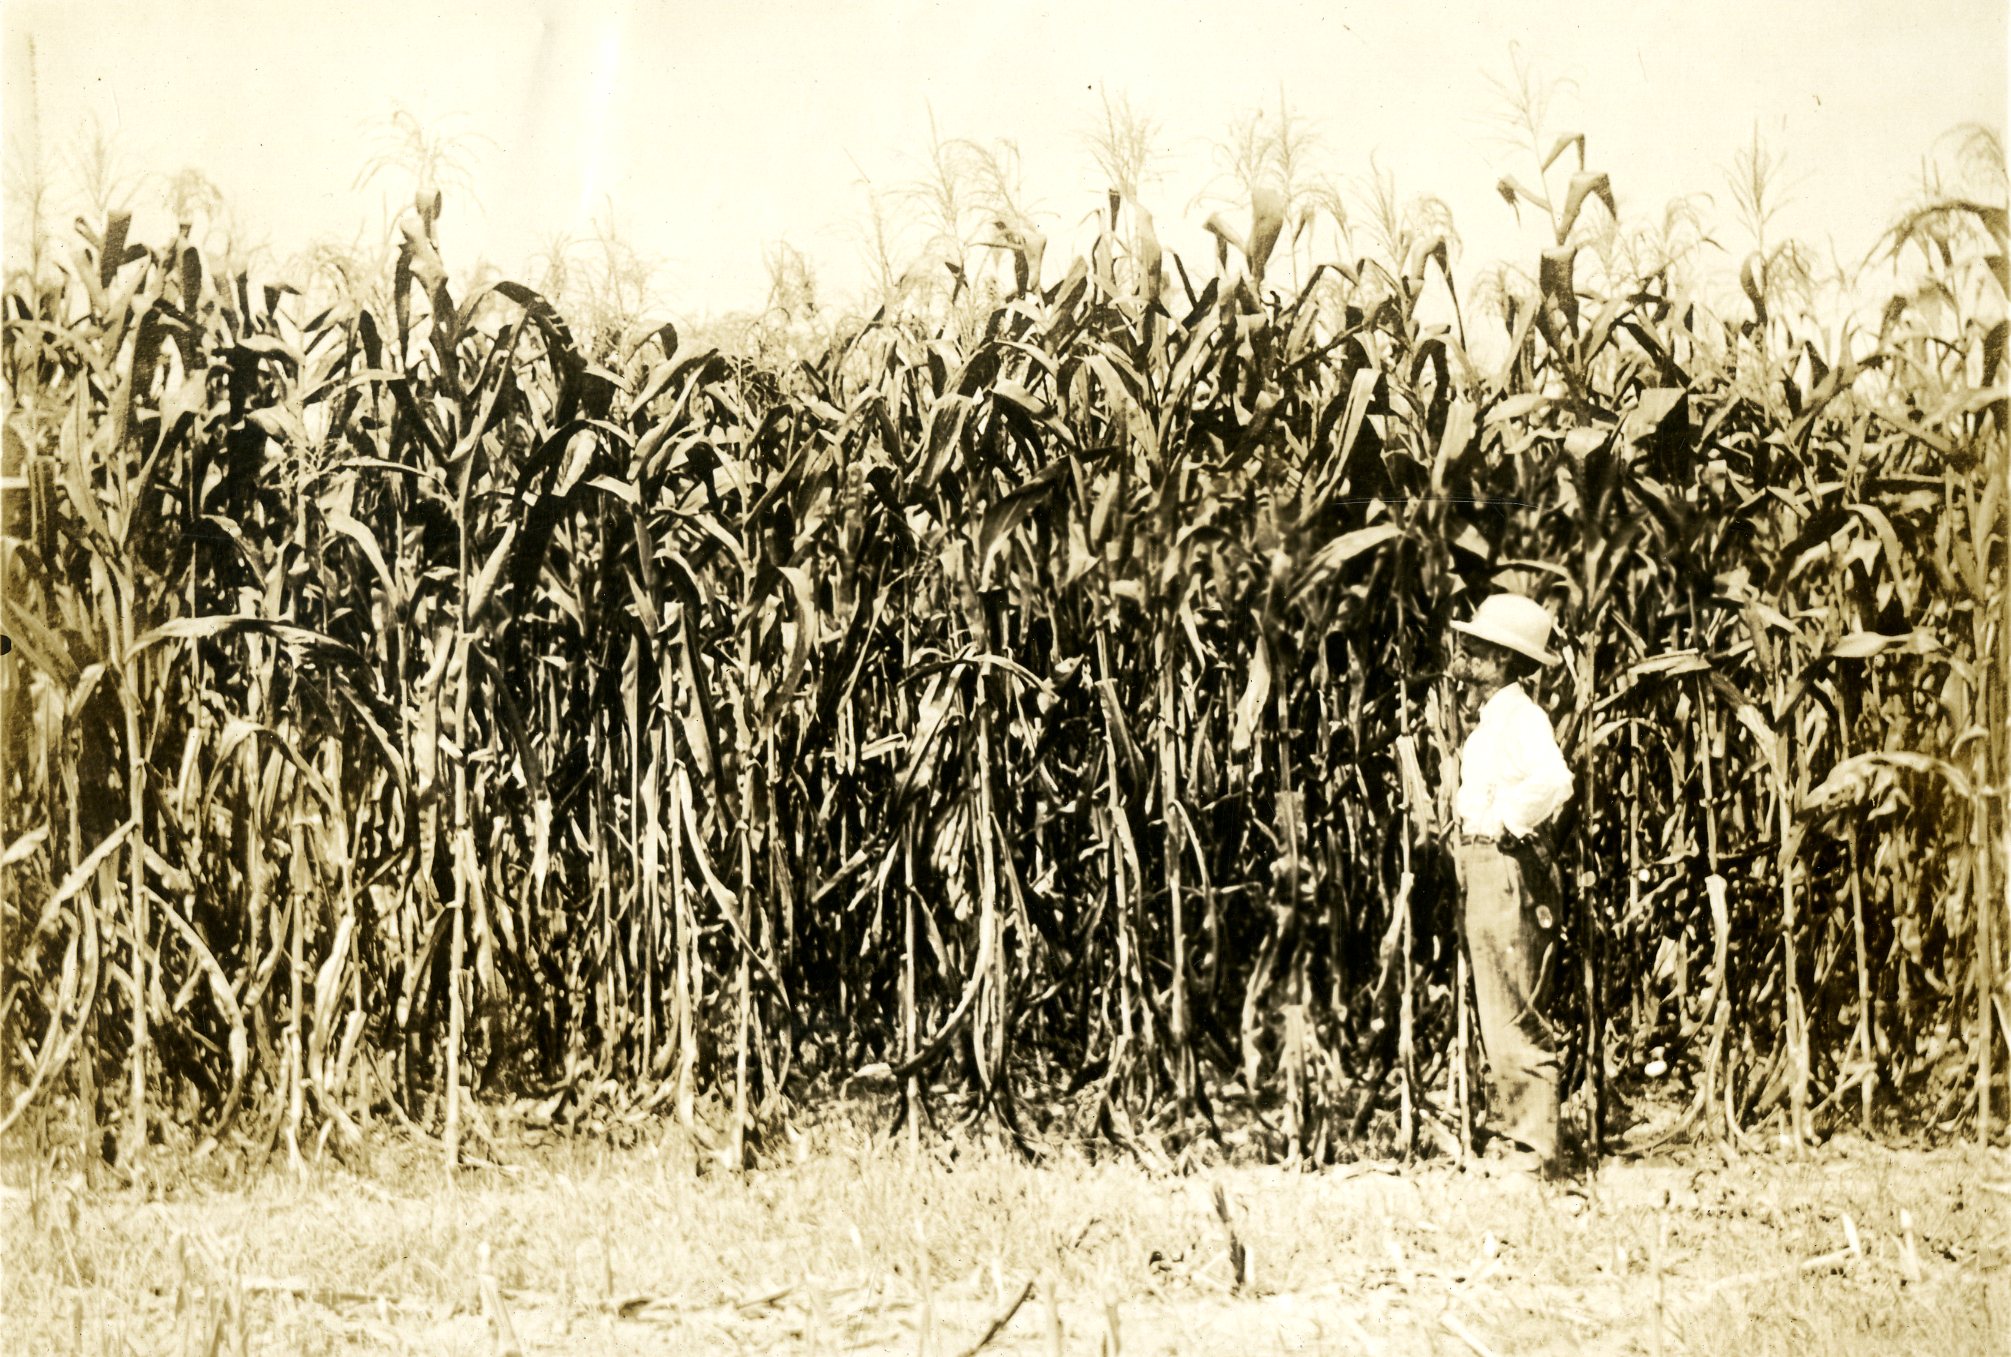 Student standing alongside corn fields